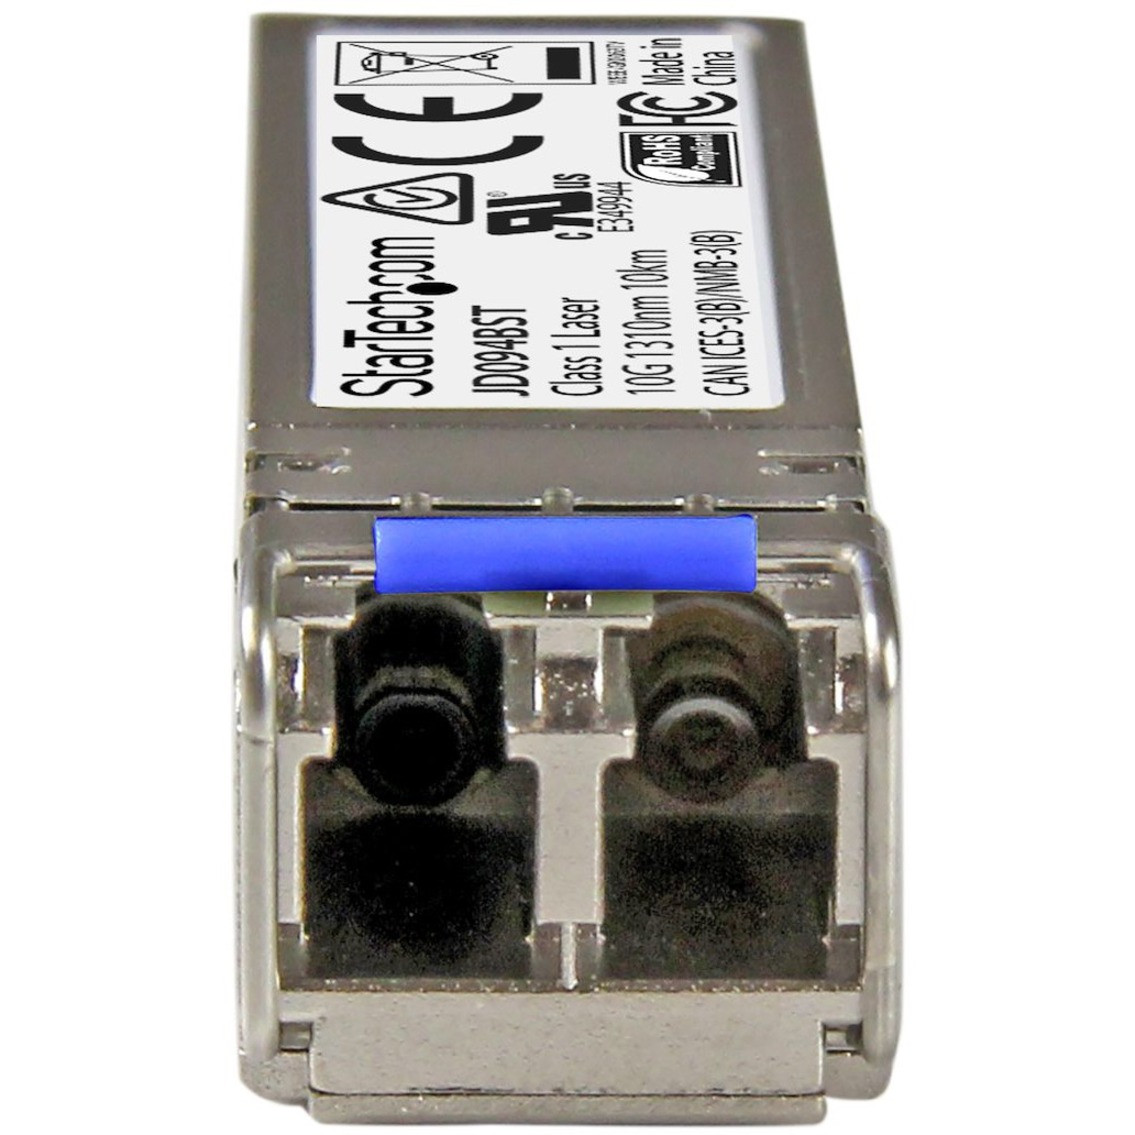 Startech .com HPE JD094B Compatible SFP+ Module10GBASE-LR 10GE Gigabit Ethernet SFP+ 10GbE Single Mode/SMF Fiber Optic Transceiver 10kmHPE… JD094BST